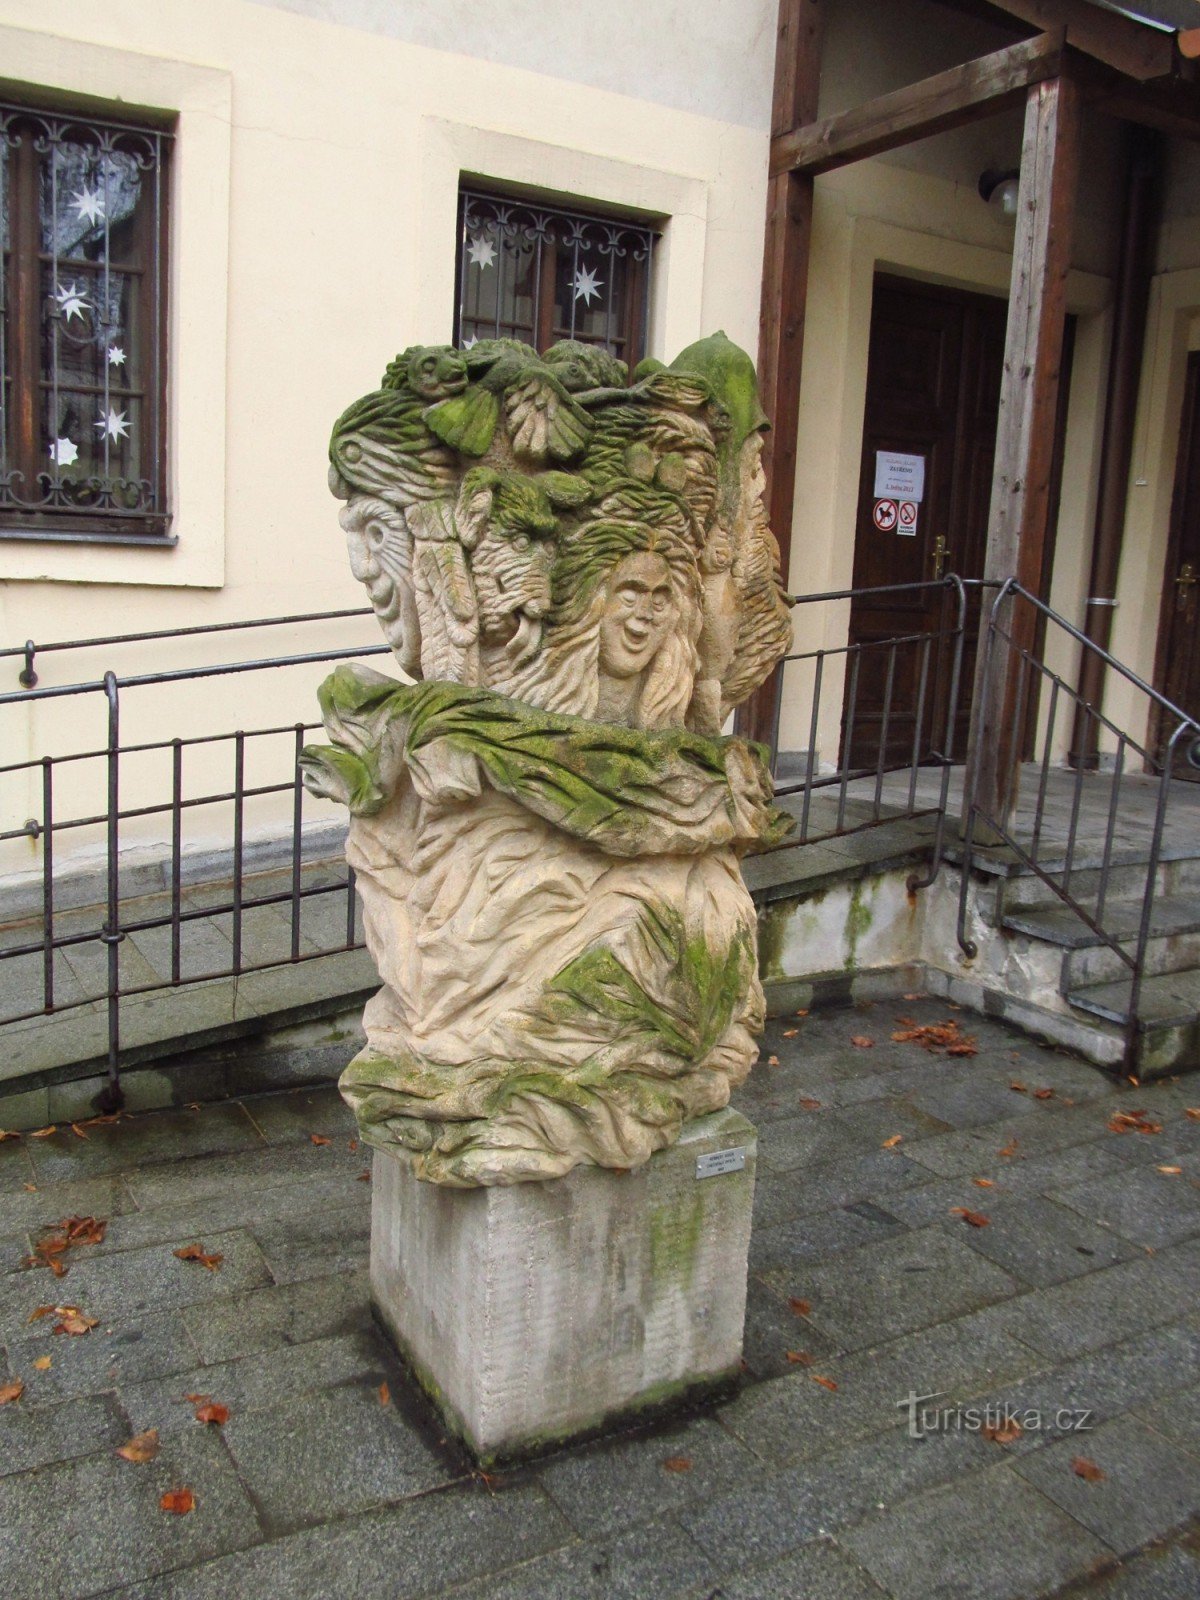 Chechtací pytlík – socha od Herberta Kiszy na kadaňských hradbách